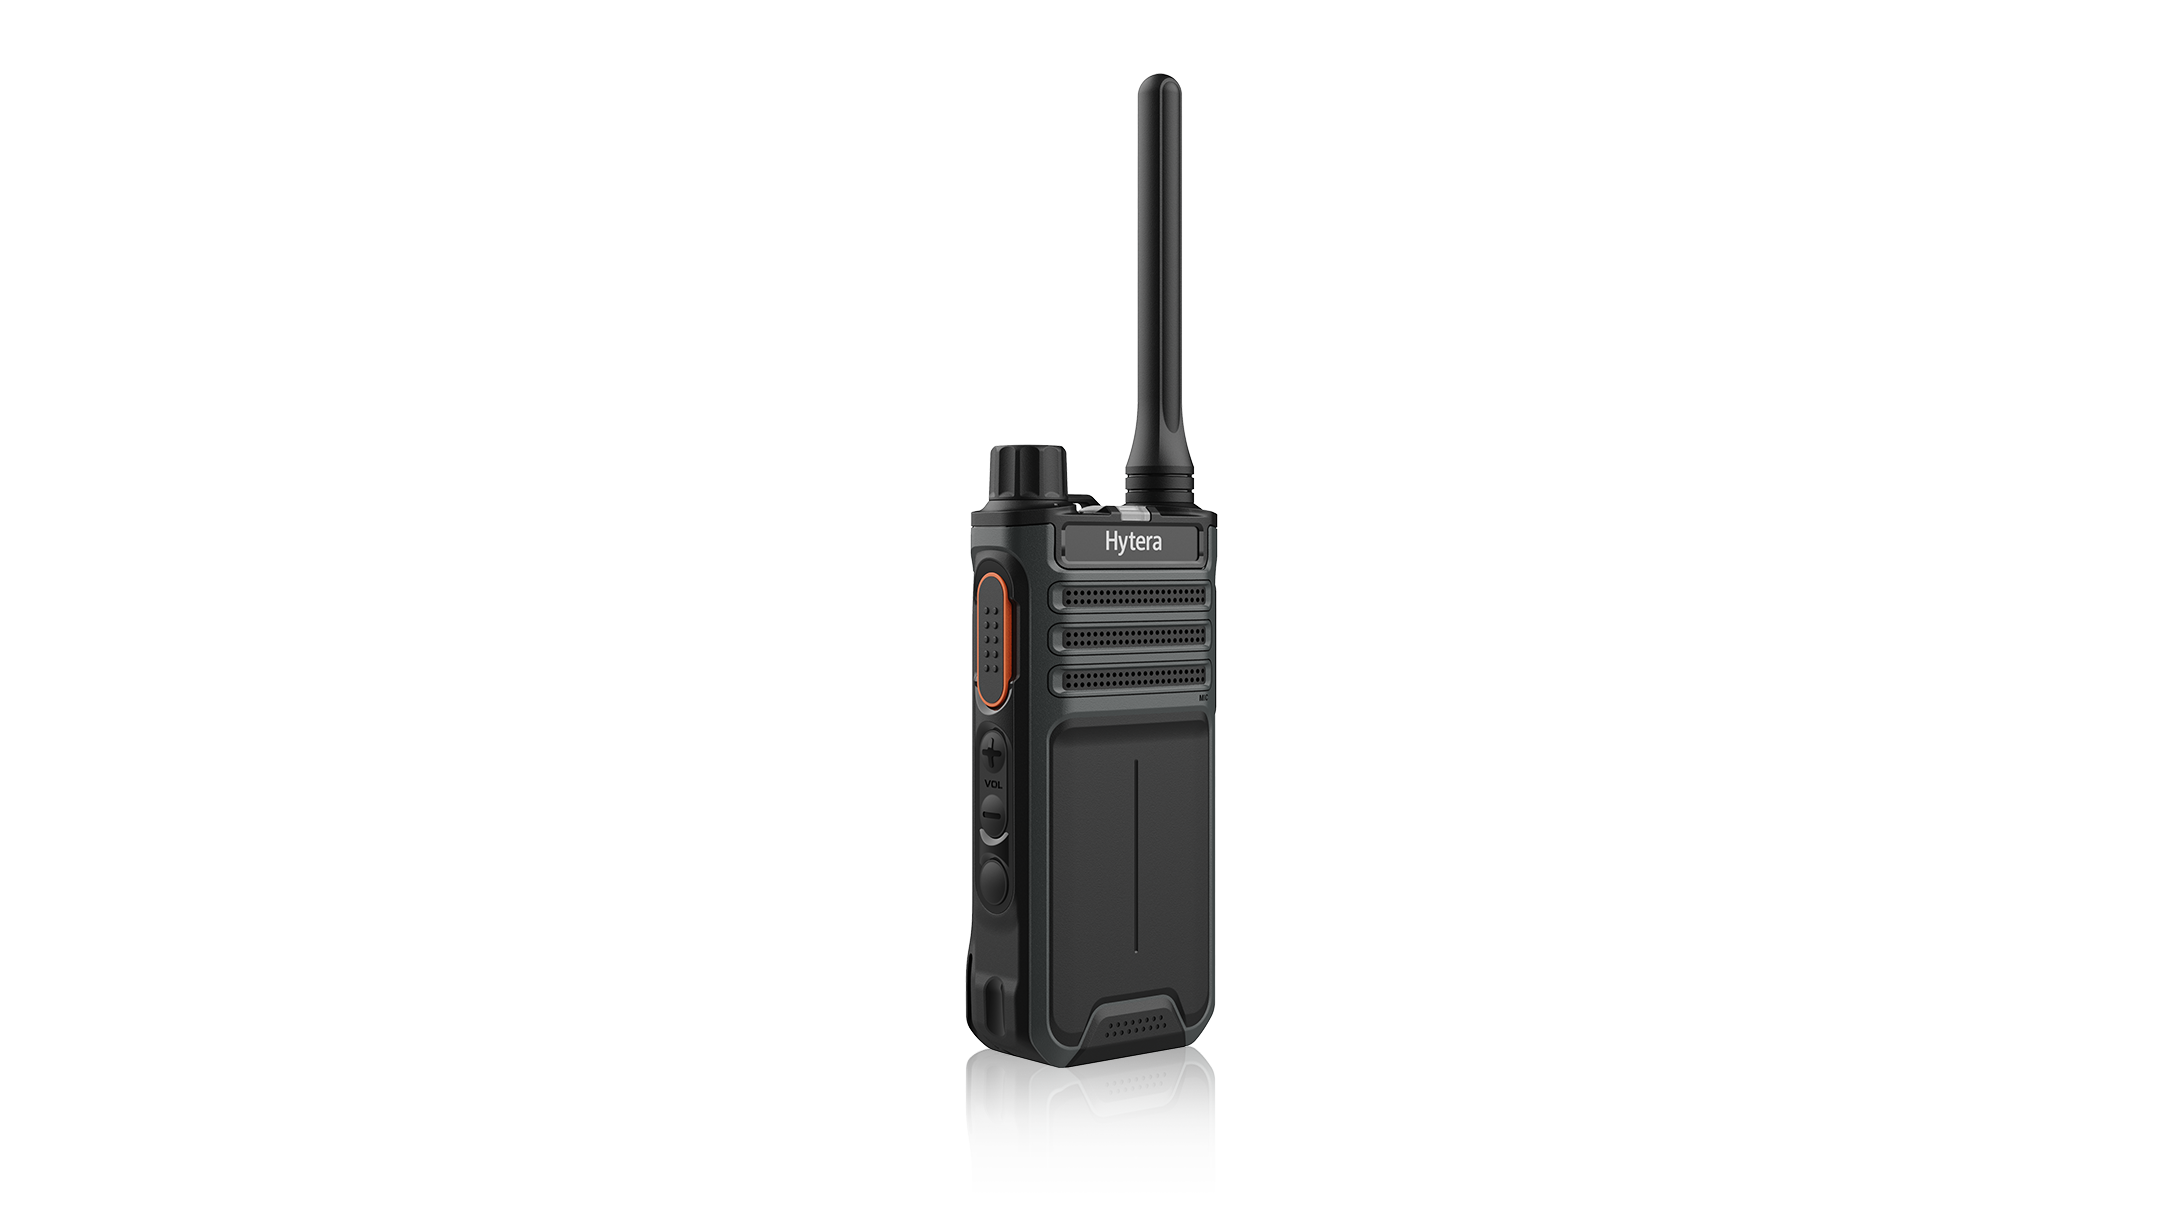 HYTERA BP516 <br />
VHF 136-174MHz / Radio Handy Digital - Analógico<br />
<br />
Radio DMR Hytera BP516 brinda un audio alto y claro de 3W que le permite escuchar y ser escuchado incluso con ruido de fondo. Admite modo digital y analógico y es compatible con sus terminales existentes. El puerto USB tipo C permite carga rápida y es conveniente para el usuario. Ideal para hoteles, supermercados, centros comerciales y almacenes.